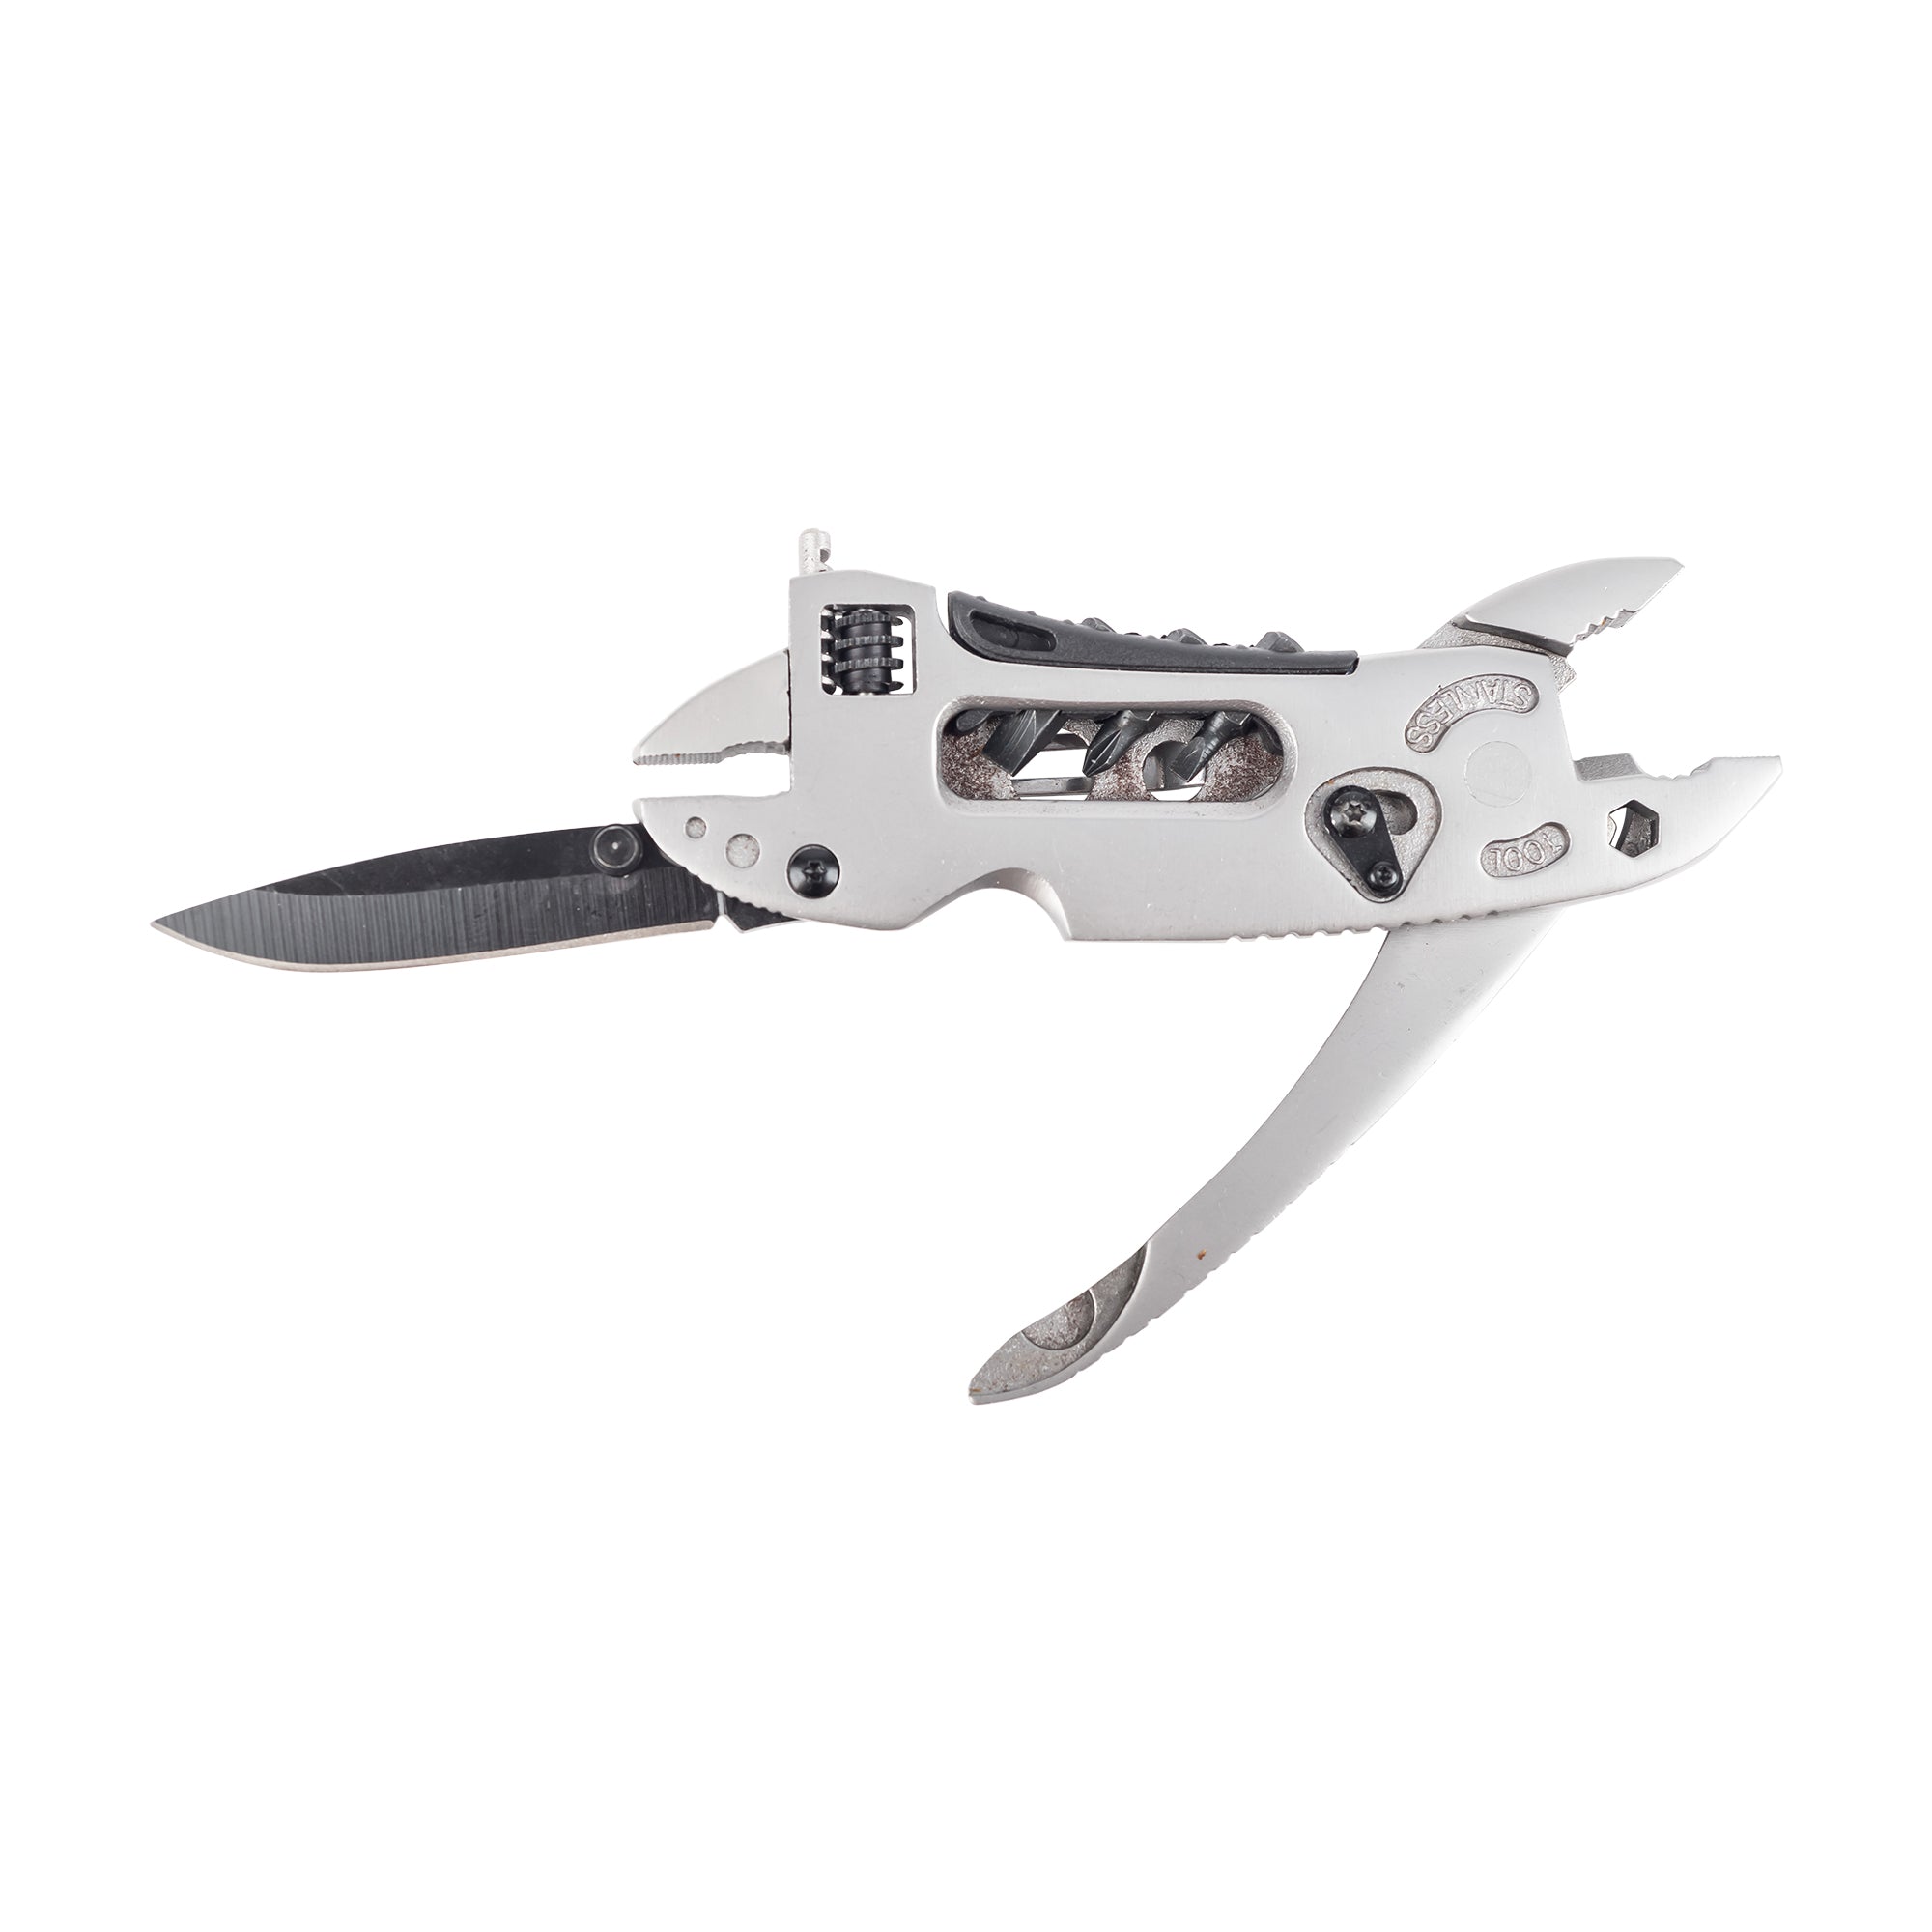 Multitool Pocket Knife for Men Women Guys, Multi Tool Cool Utility